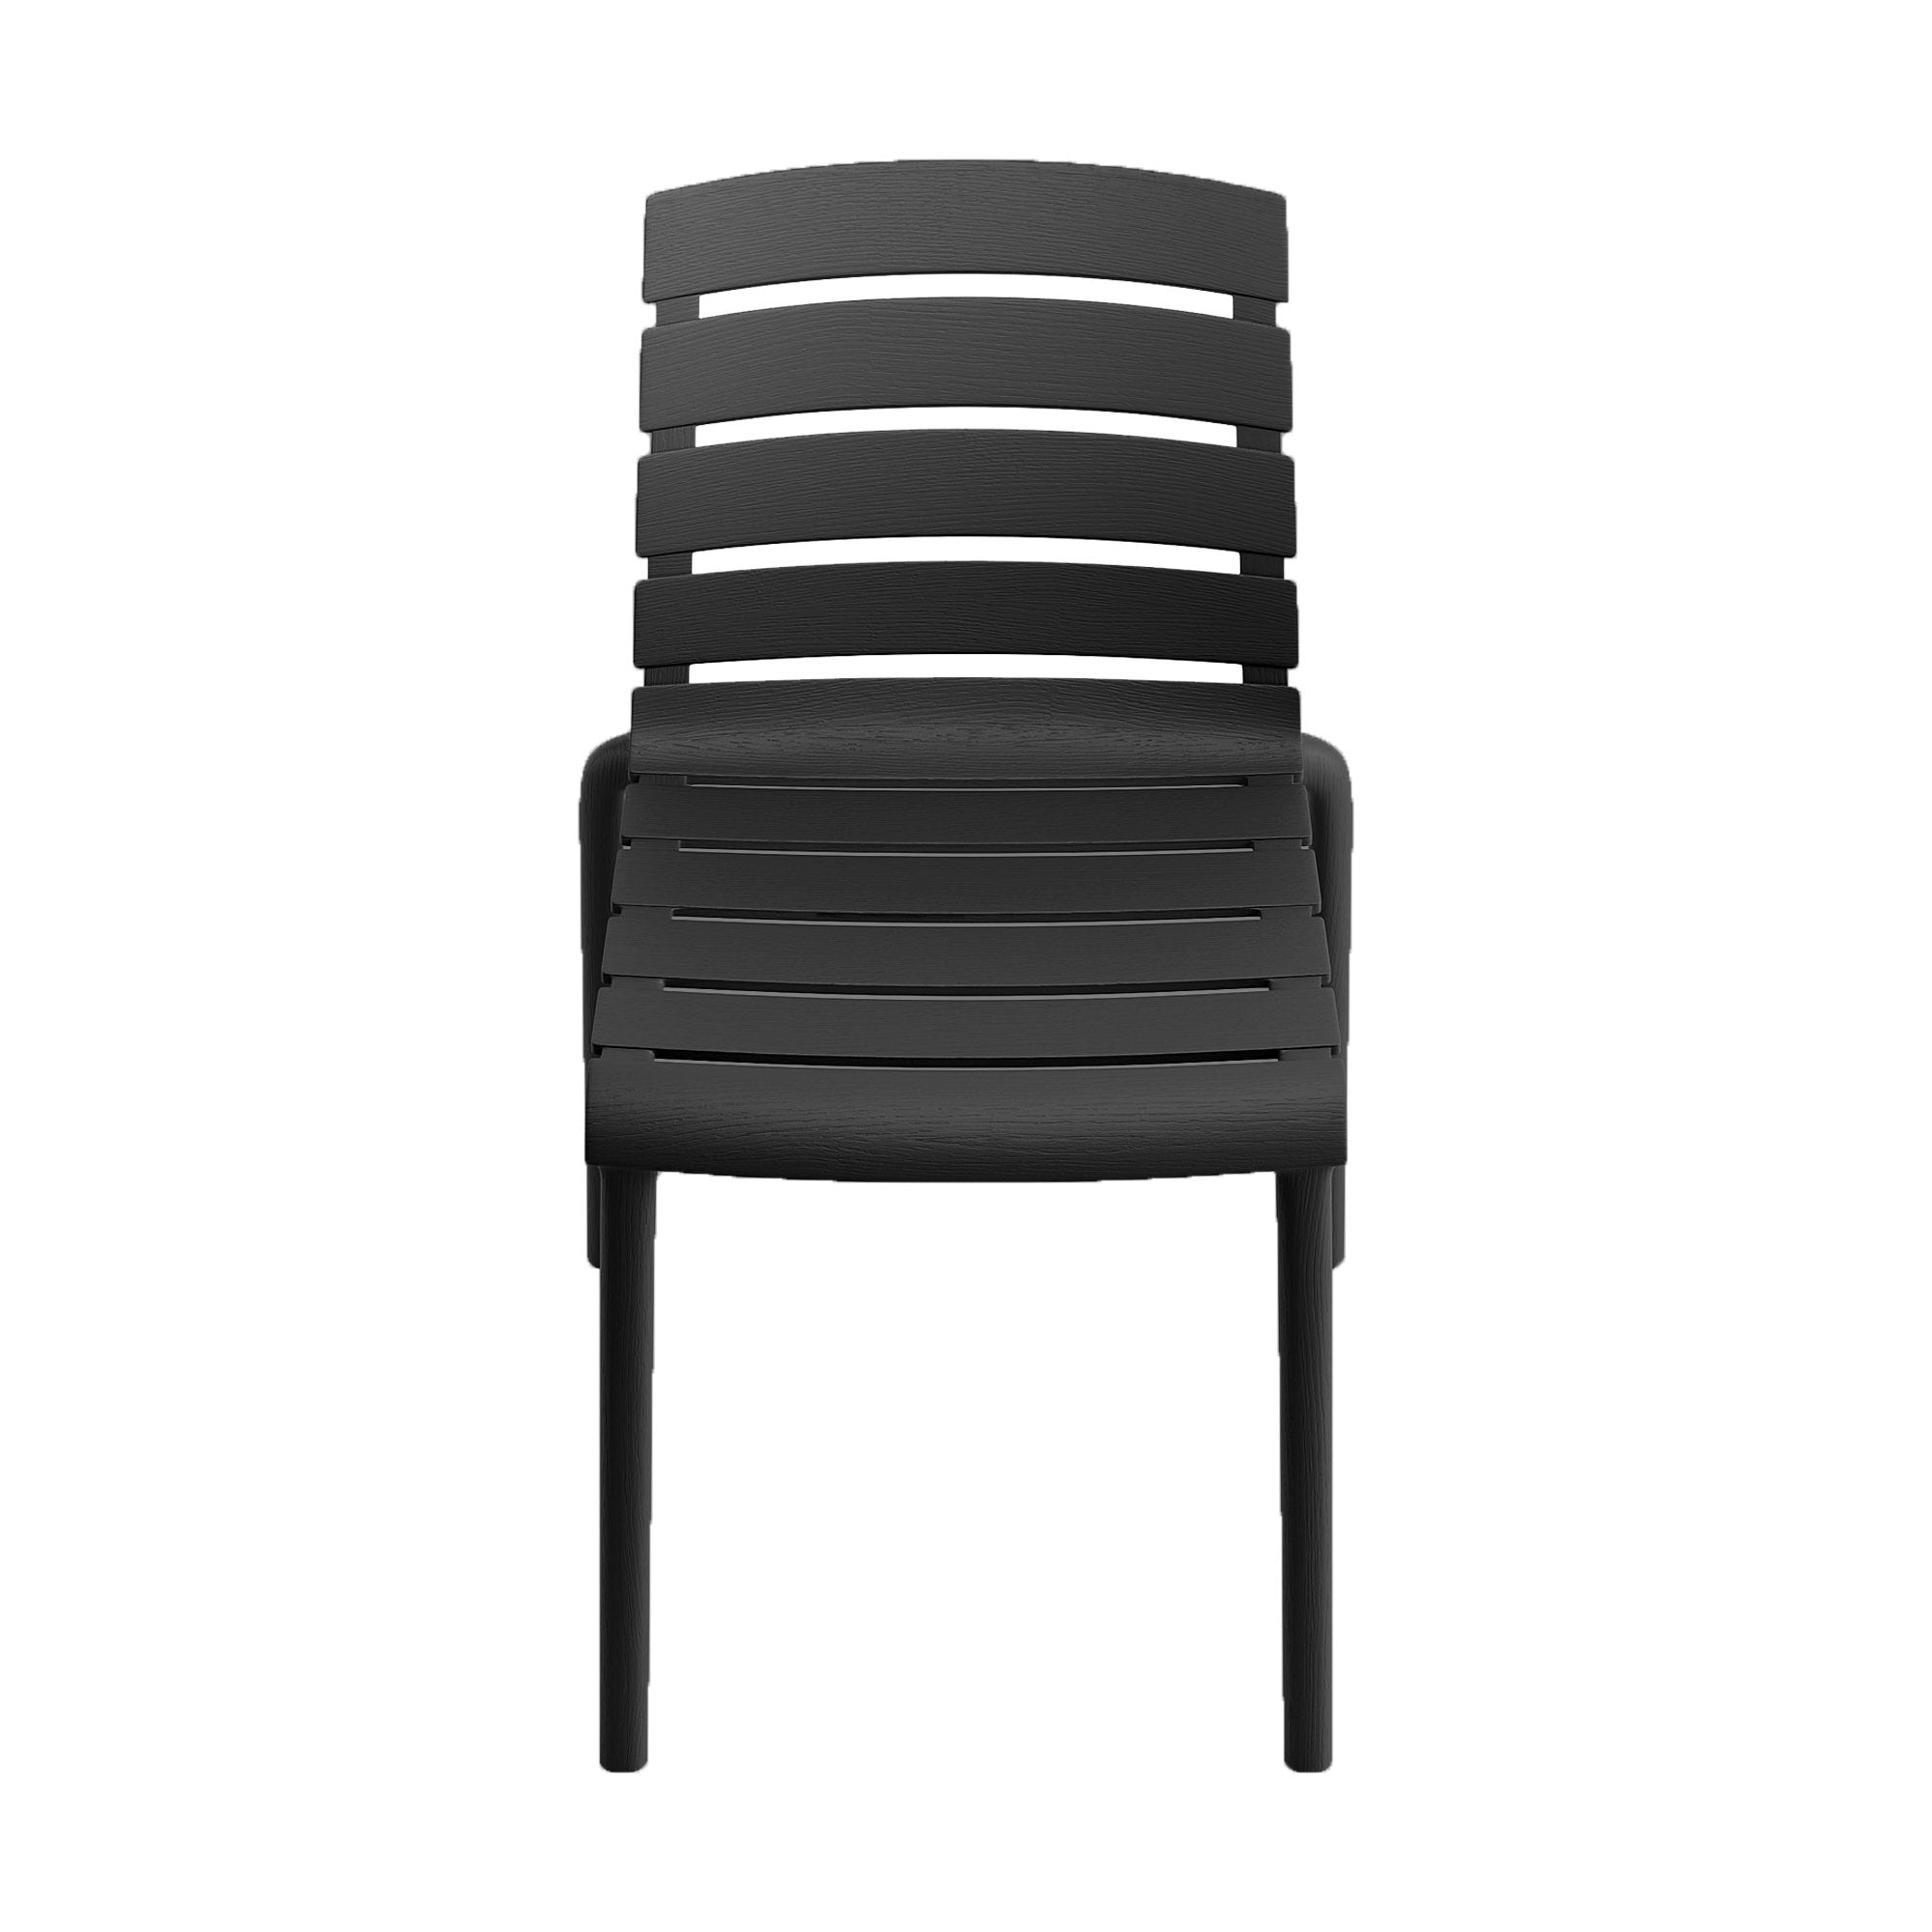 Rylan Indoor and Outdoor Stackable Chair - Black - Set of 4